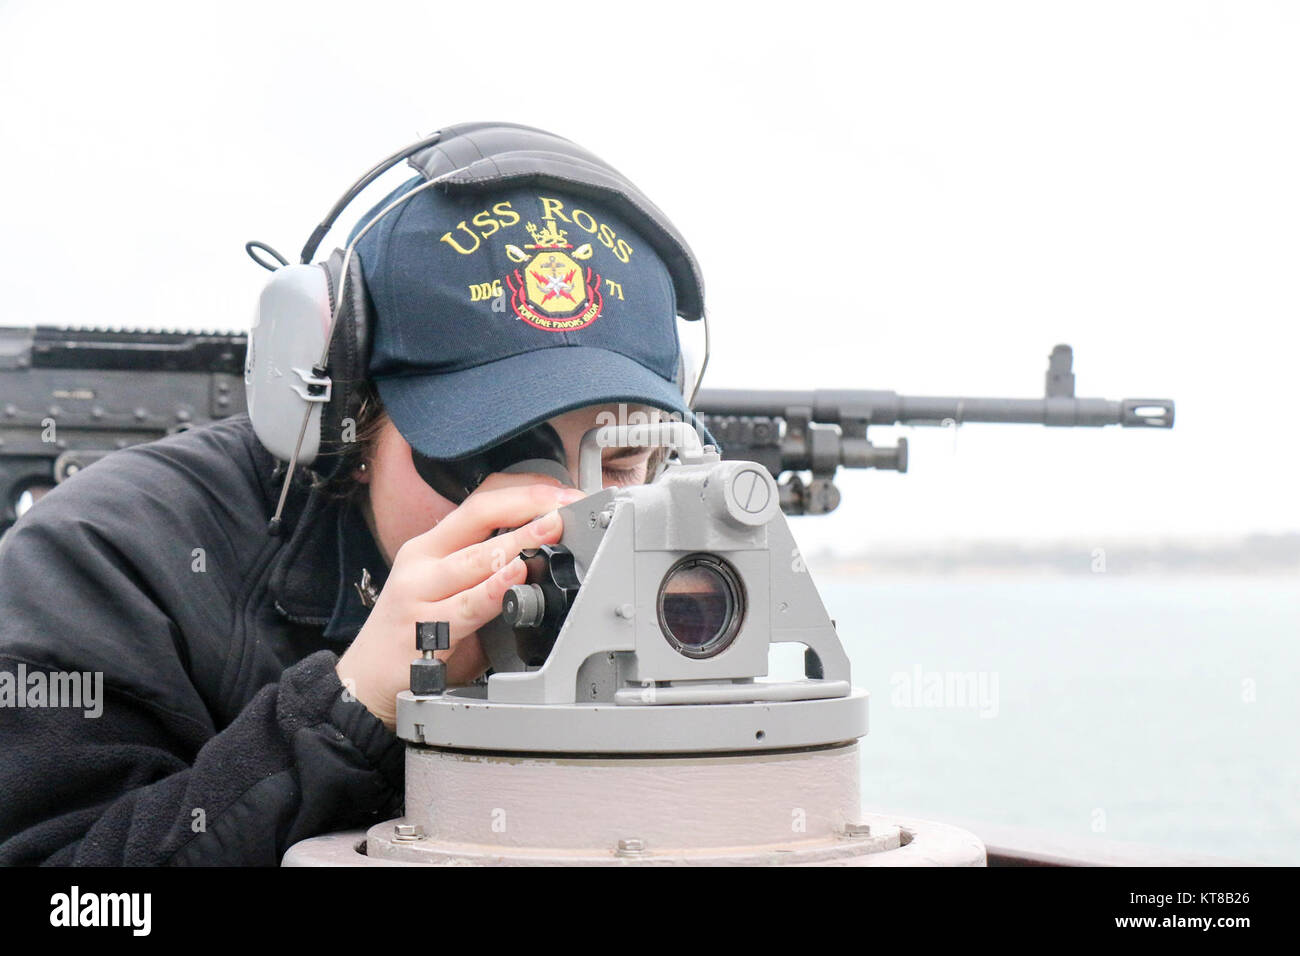 La classe Arleigh Burke destroyer lance-missiles USS Ross (DDG 71) arrive à Lisbonne, Portugal, pour une visite du port de participer à la célébration des événements commémoratifs du 700e anniversaire de la Marine Portugaise. Ross, l'avant-déployé à Rota, Espagne, mène des opérations navales dans la sixième flotte américaine Zone d'opérations à l'appui de la sécurité nationale des États-Unis en Europe et en Afrique. (U.S. Navy Banque D'Images